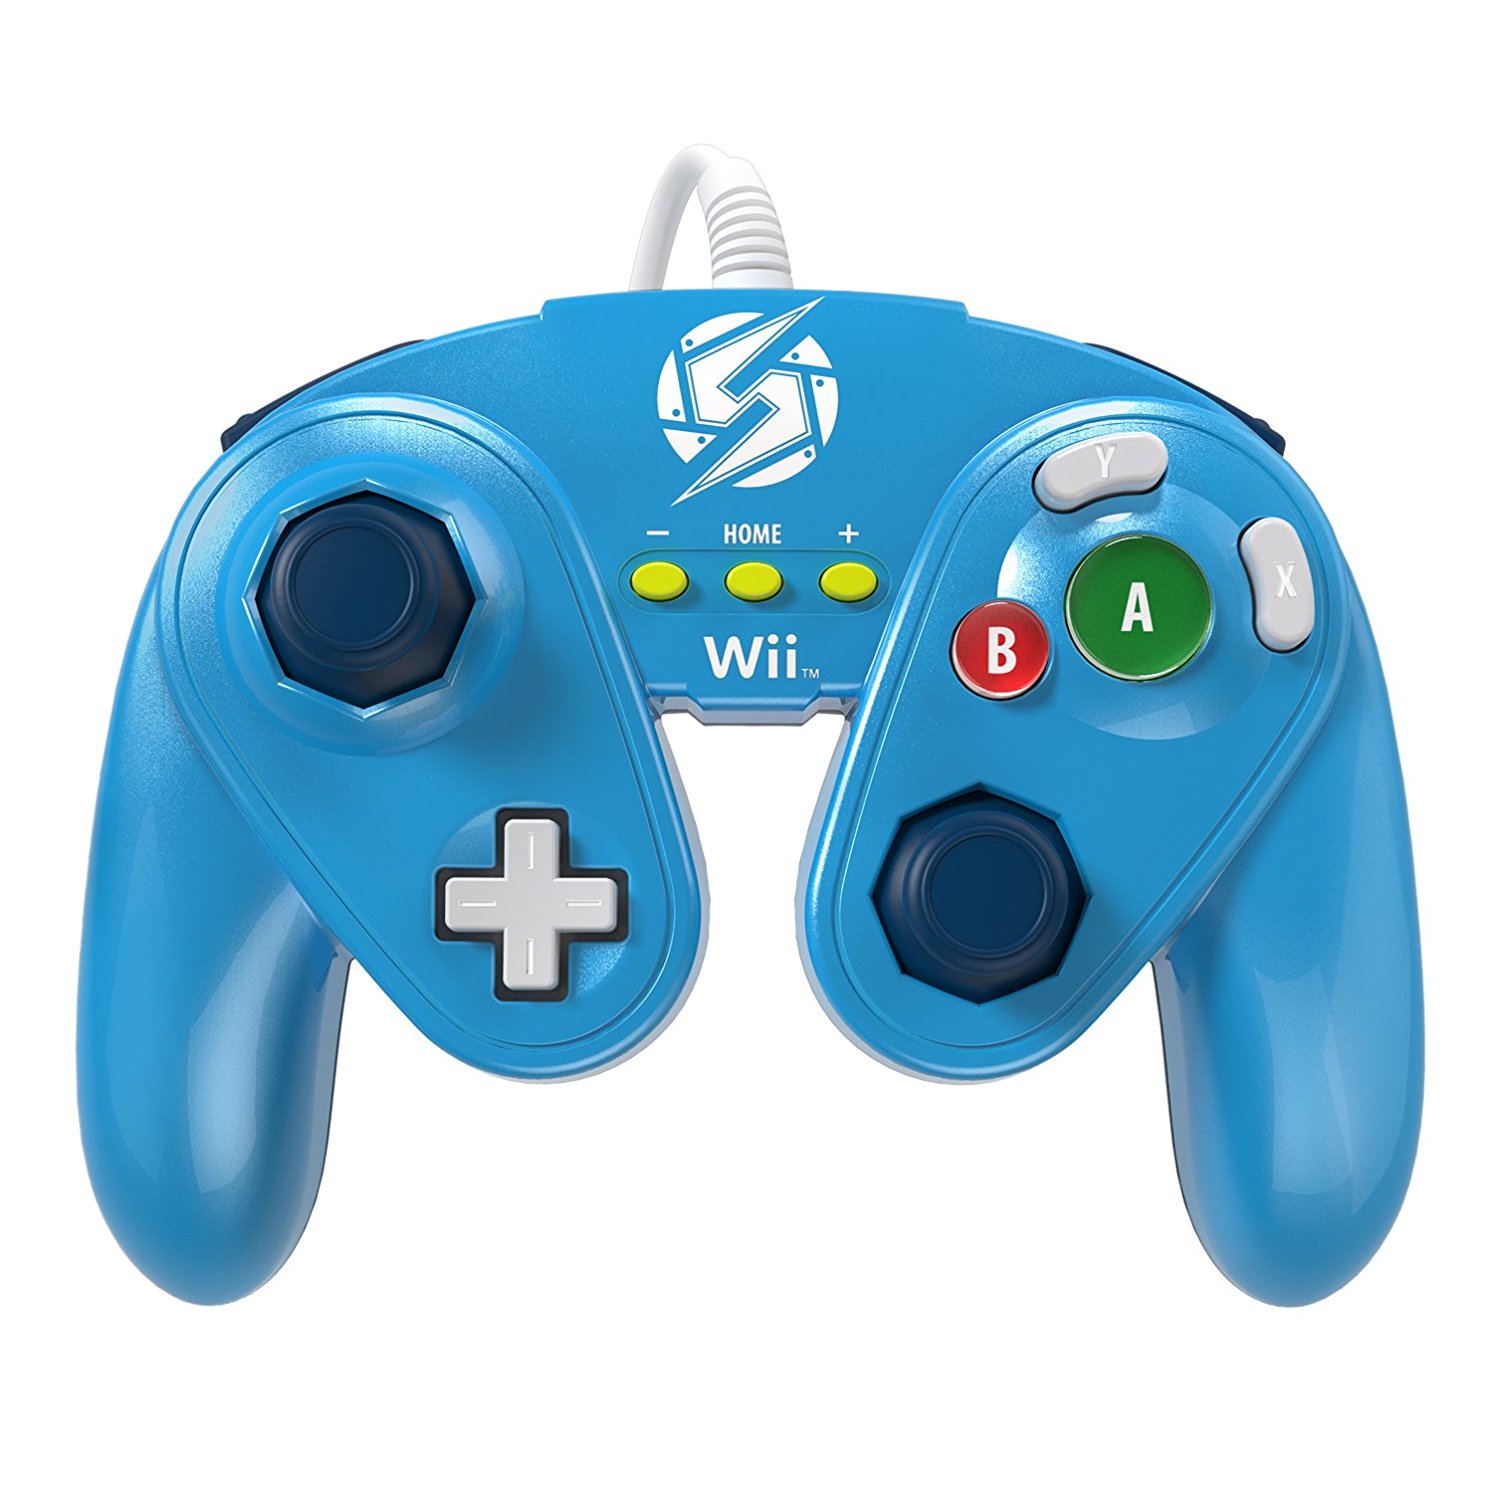 Nintendo Wii U - Gamecube Controller - Samus Design